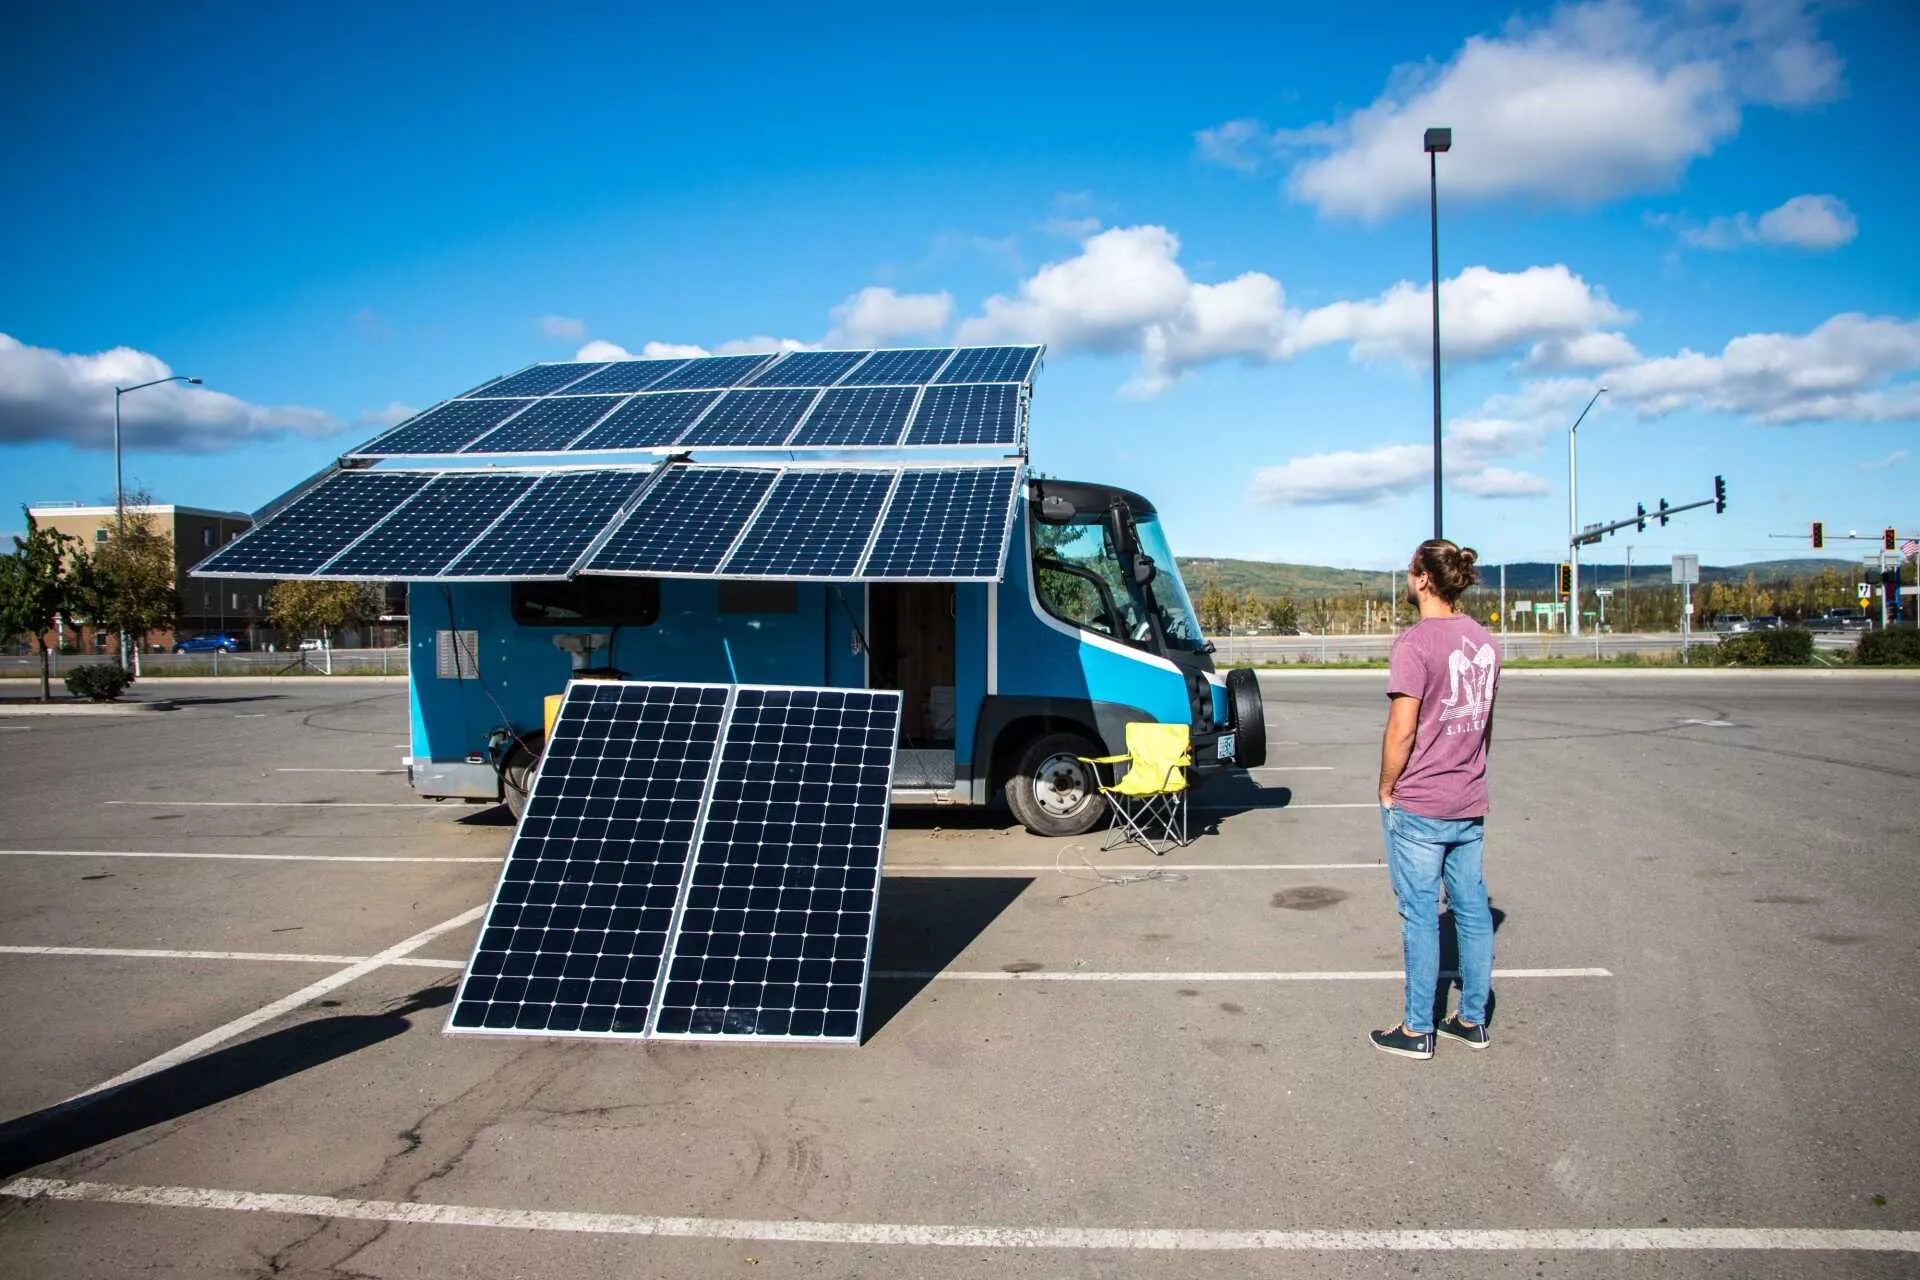  imagen: sunpower-route-del-sol-energia-solar-van-meta ALT text: Route Del Sol está viajando en una van 100% eléctrica impulsada por la energía solar, gracias a la tecnología de los paneles SunPower con el apoyo de Galt Energy.